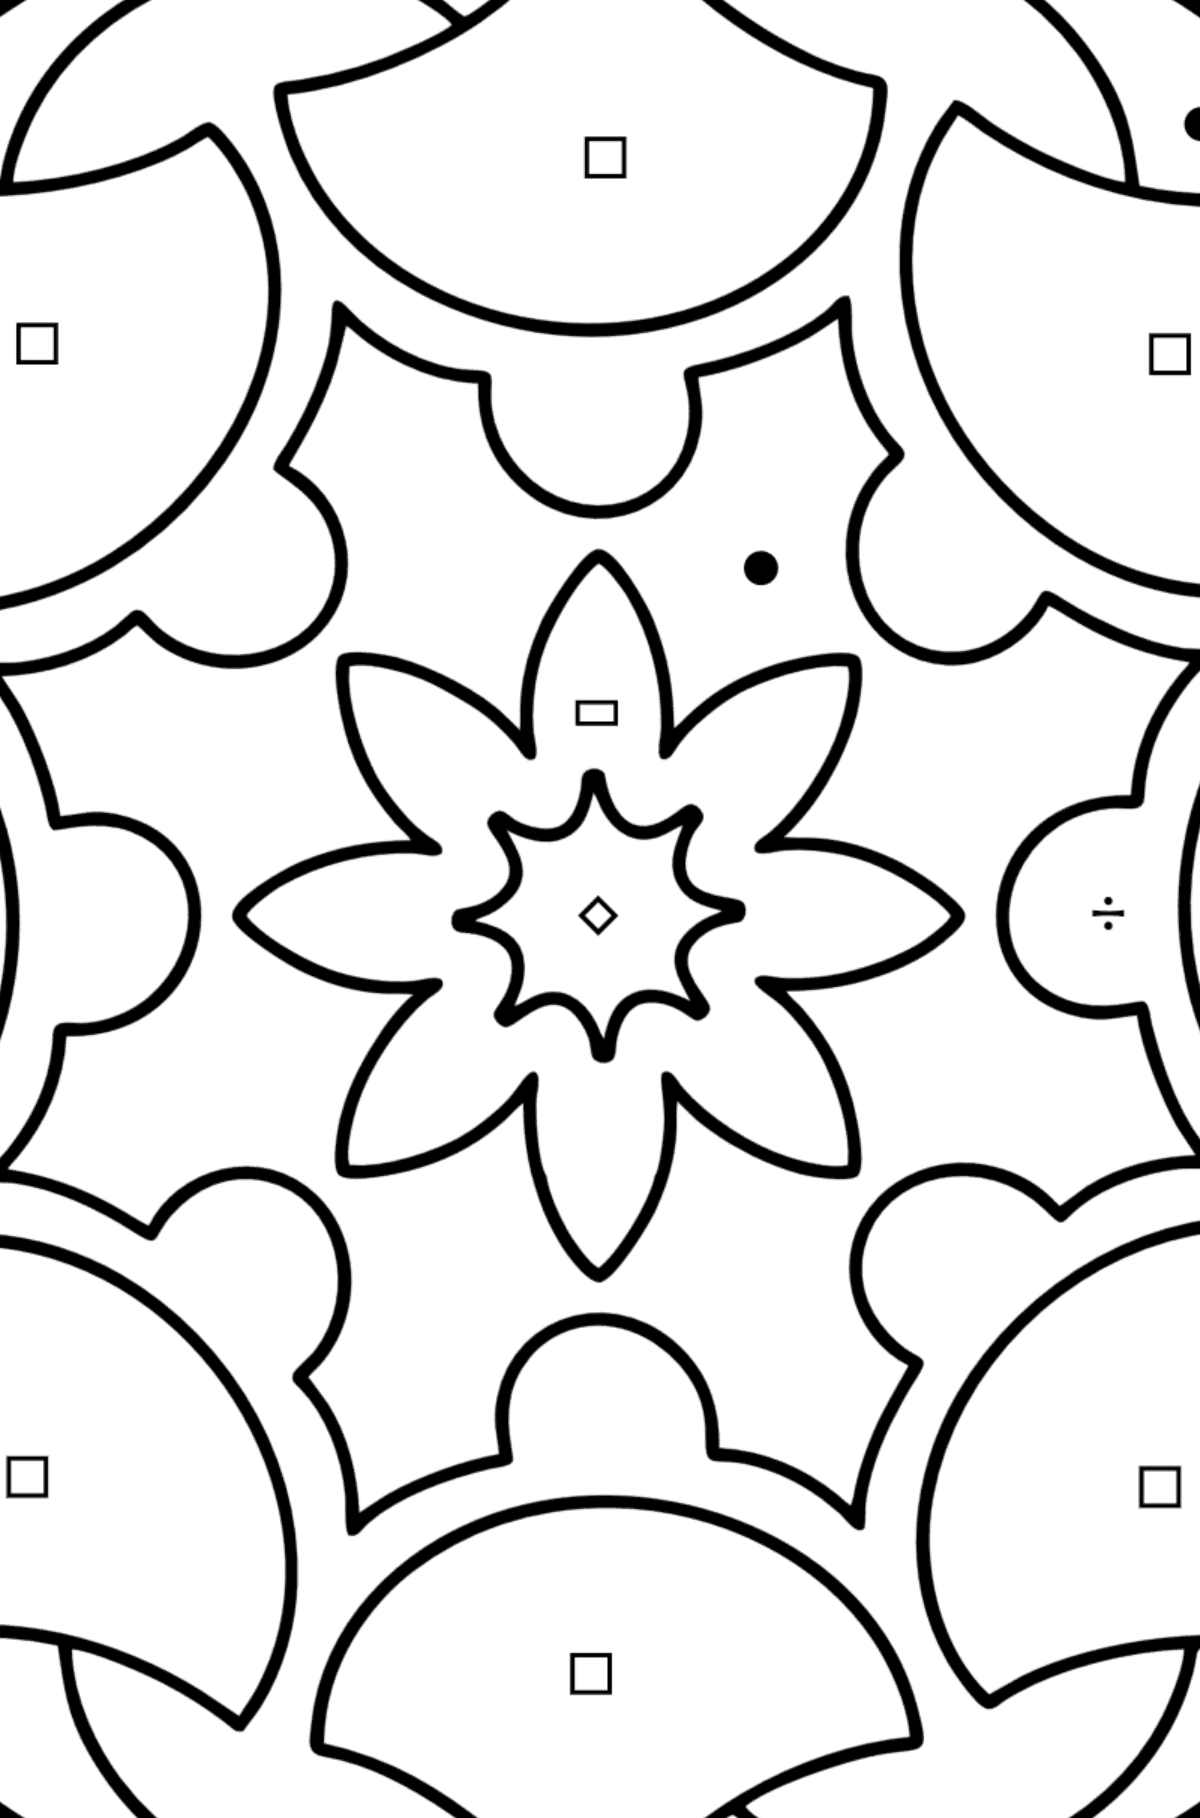 Kolorowanka Mandala - 13 elementów - Kolorowanie według symboli i figur geometrycznych dla dzieci